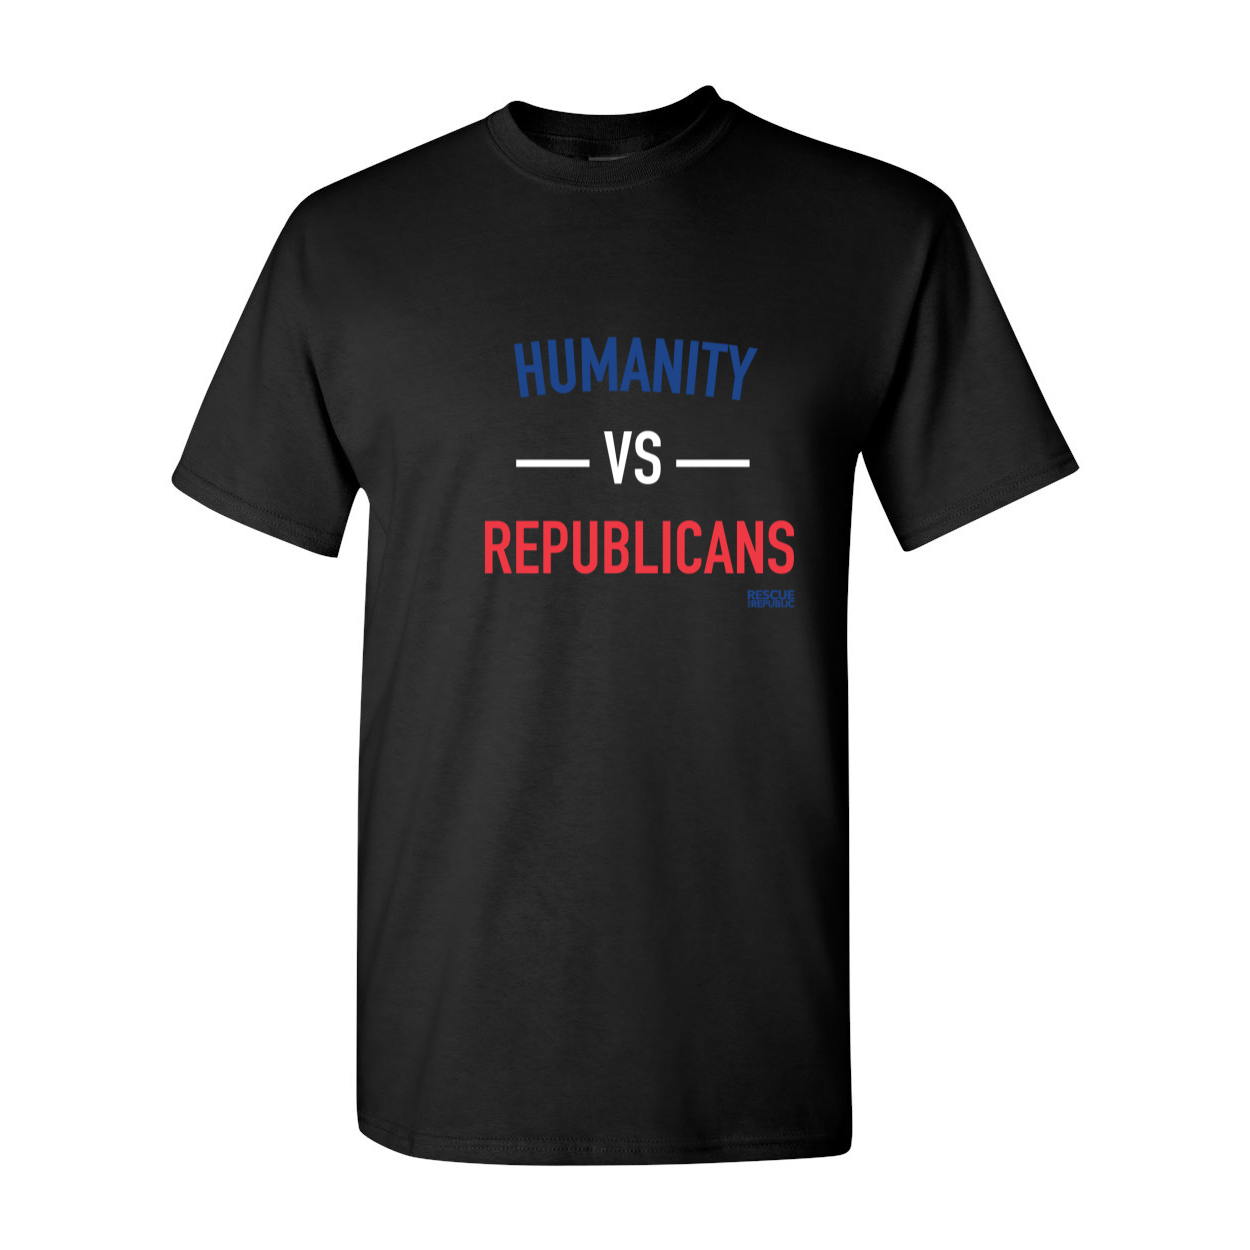 Humanity vs Republicans T-Shirt